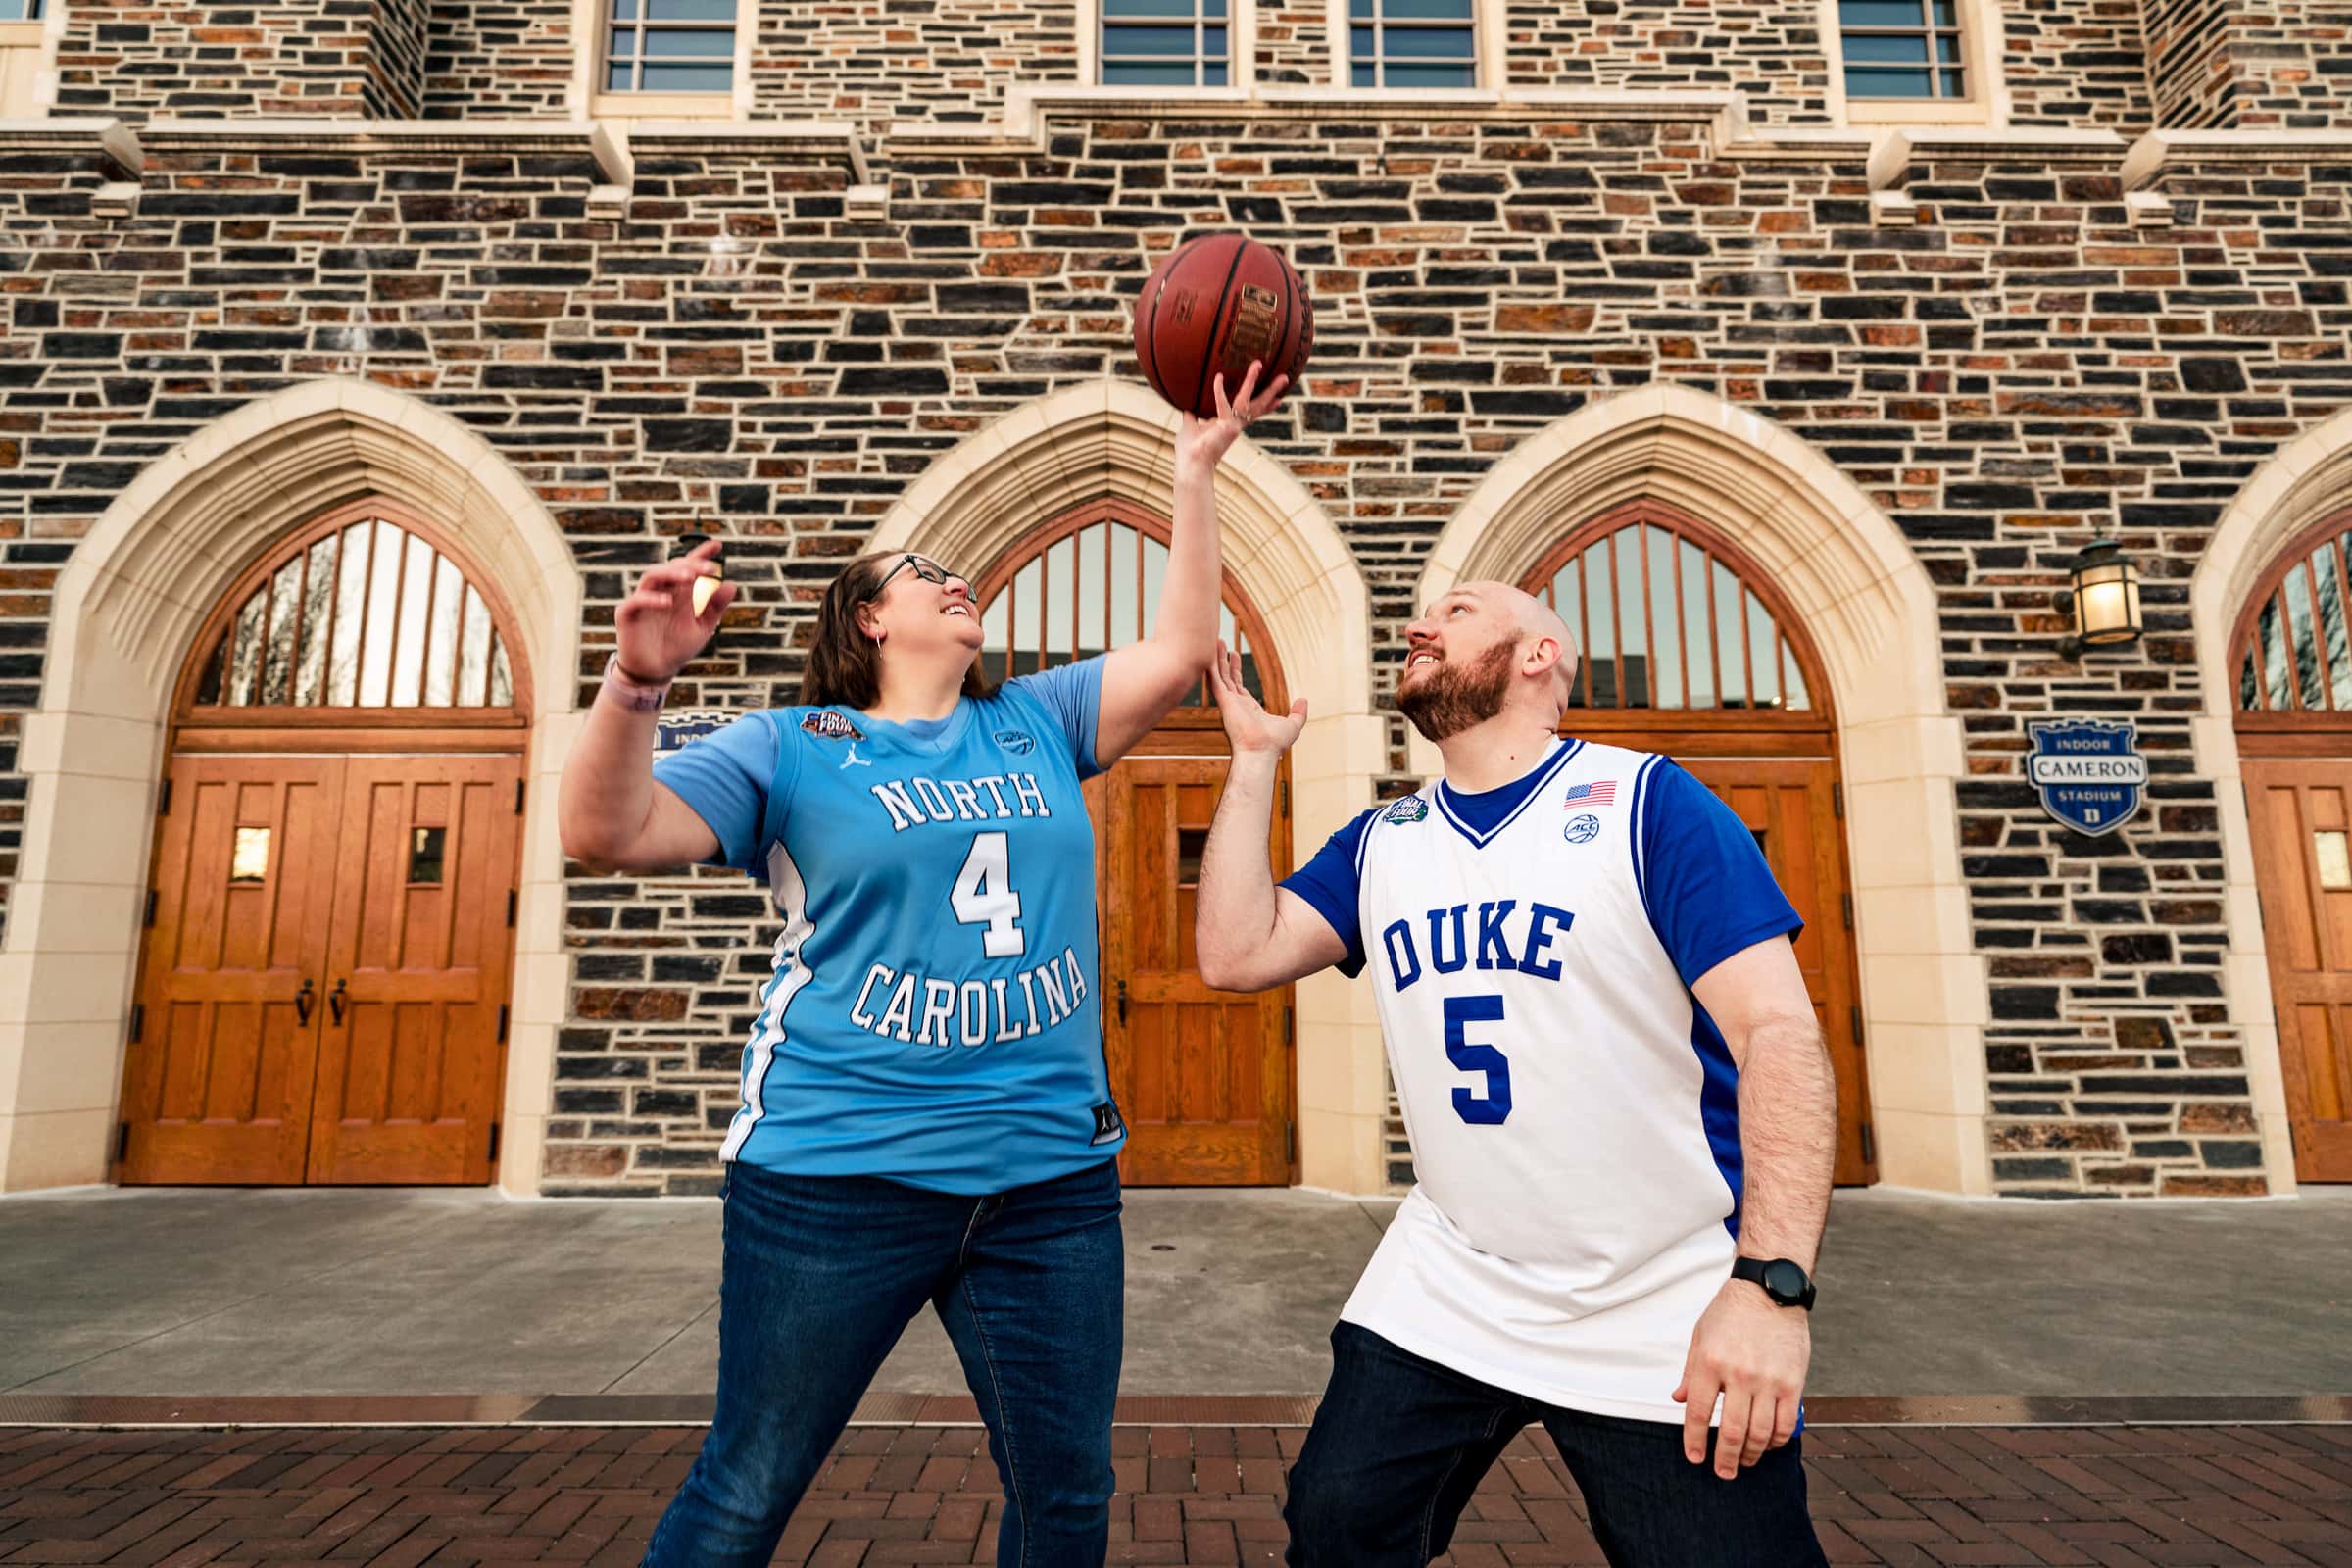 UNC v. Duke engagement photos on Duke Campus | photos by Kivus & Camera